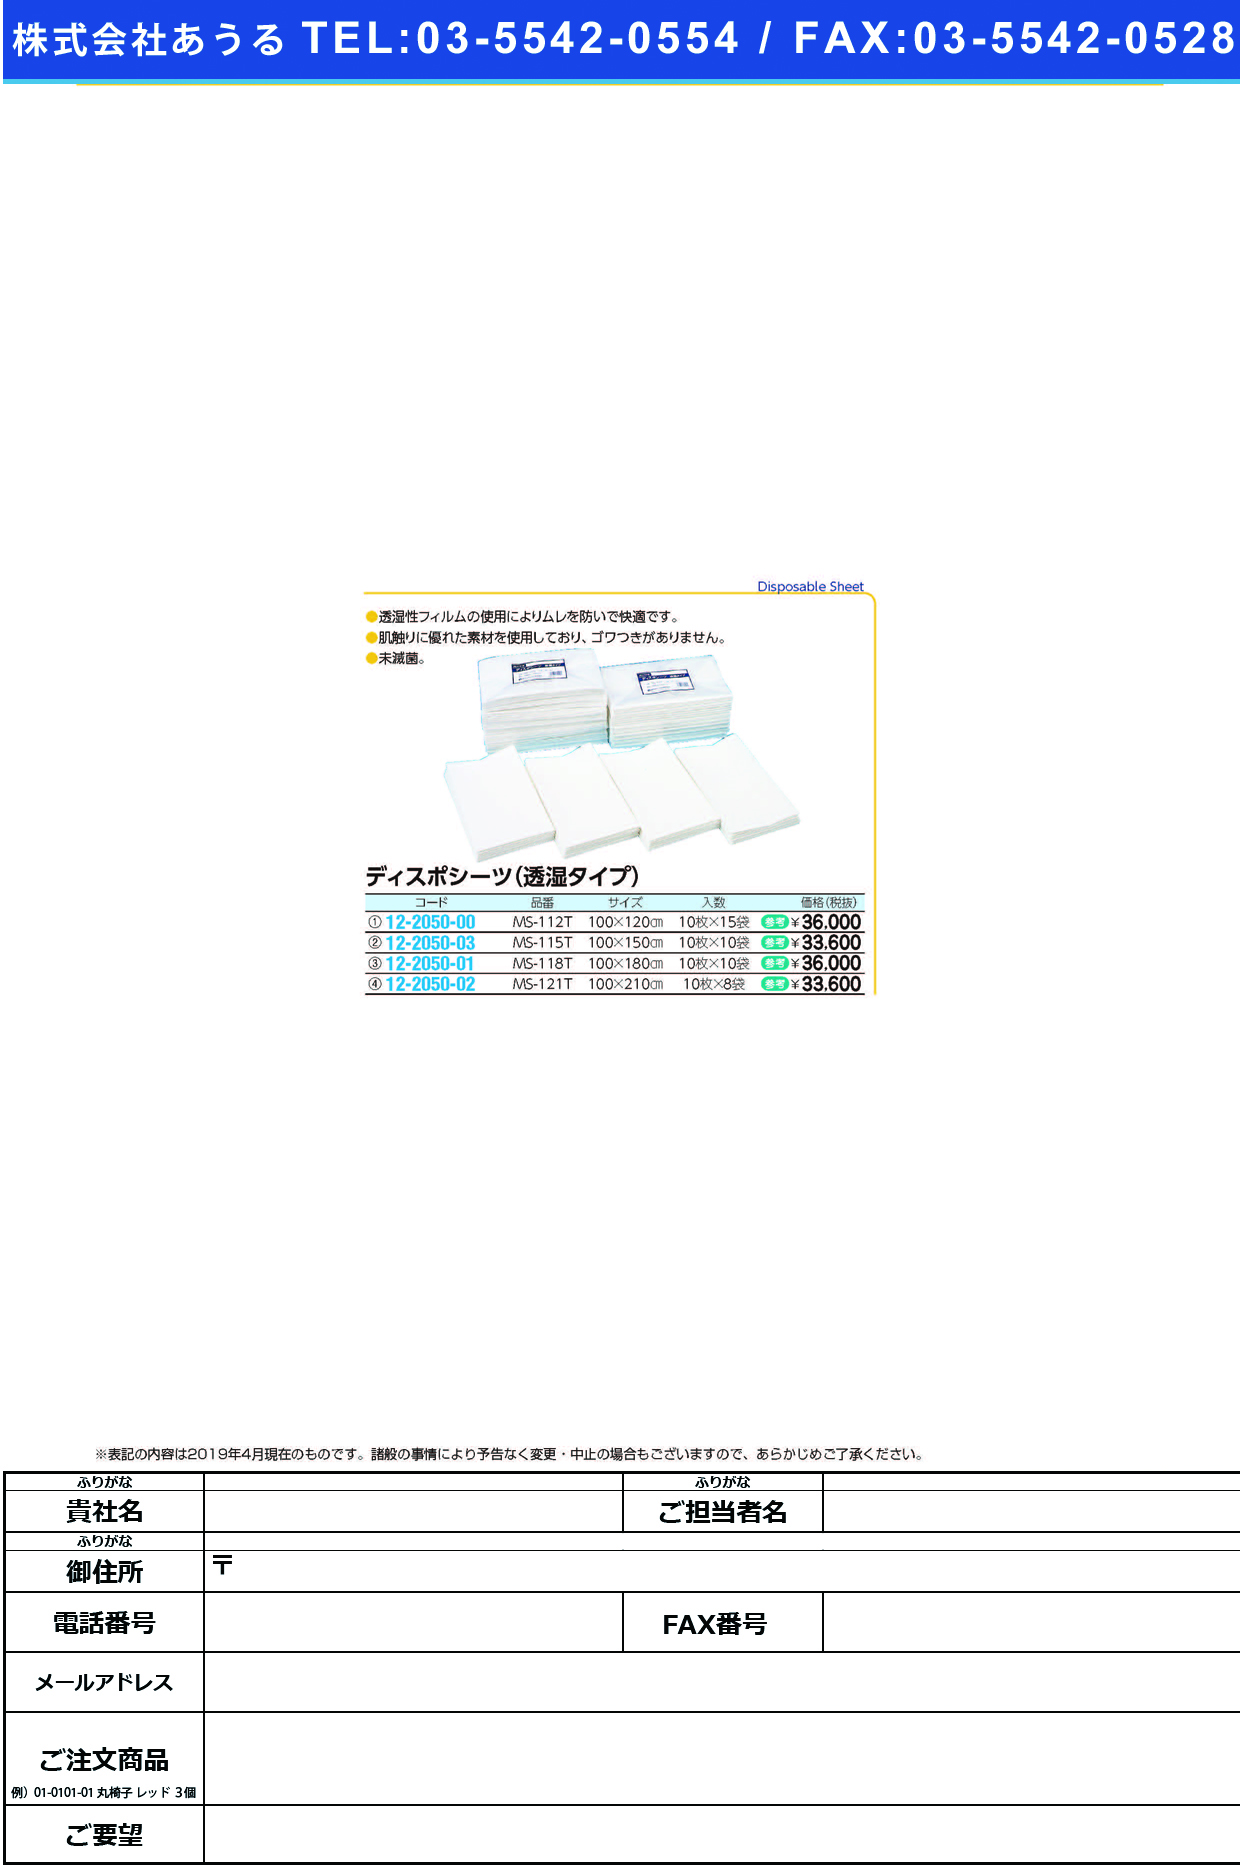 (12-2050-00)ディスポシーツ（透湿タイプ）未滅菌 MS-112T(10ﾏｲX15ﾌｸﾛ) ﾃﾞｨｽﾎﾟｼｰﾂﾄｳｼﾂﾀｲﾌﾟ【1梱単位】【2019年カタログ商品】